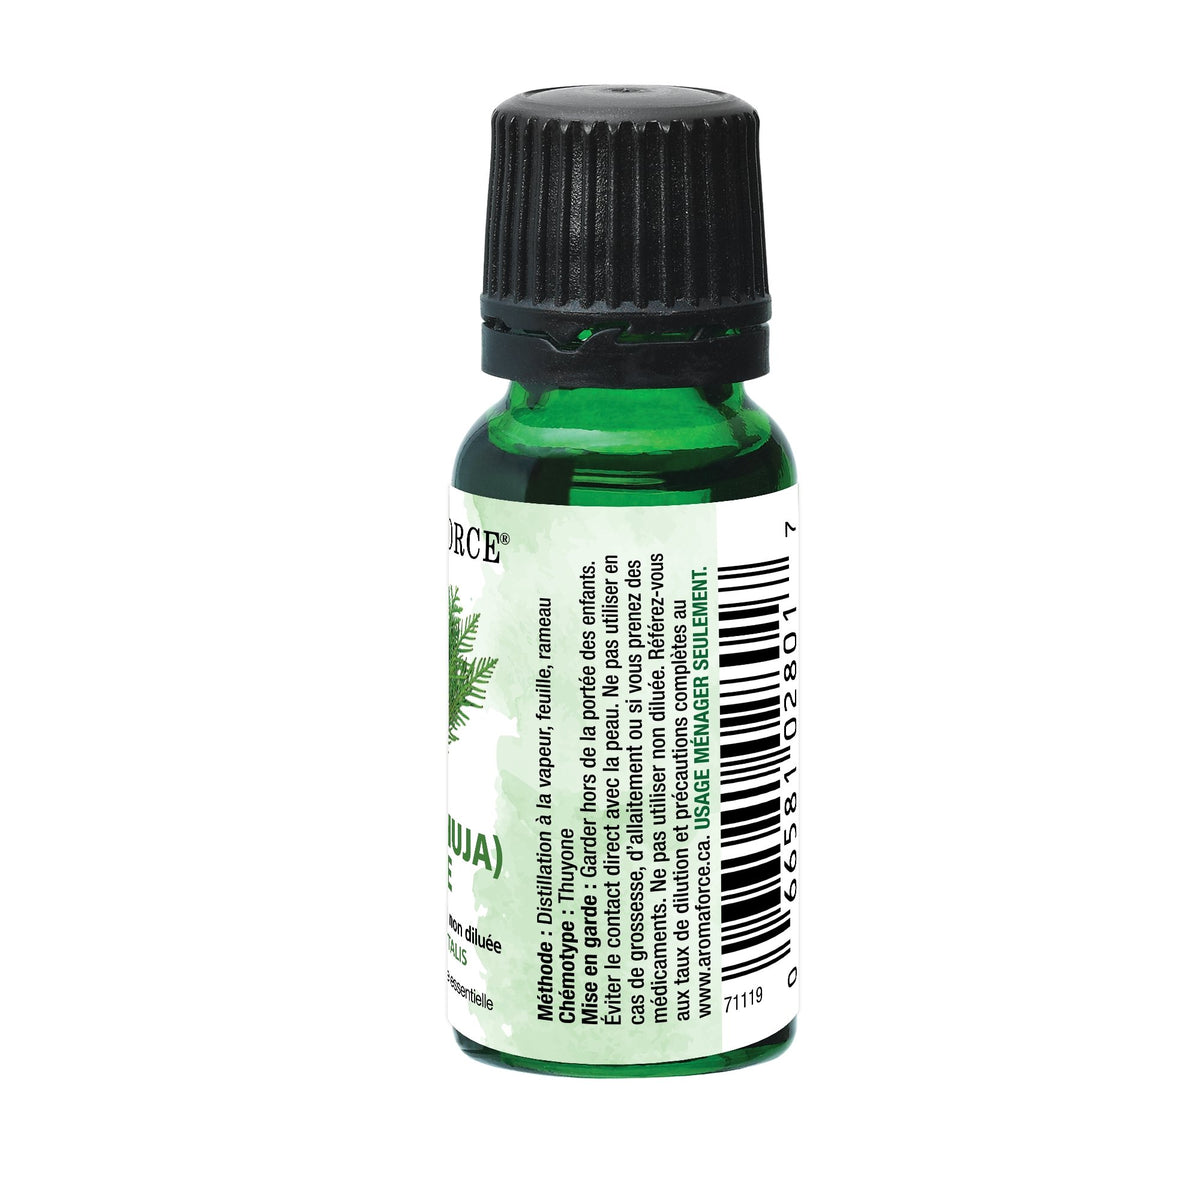 Aromaforce Cedar leaf Essential Oil 15mL - A.Vogel Canada